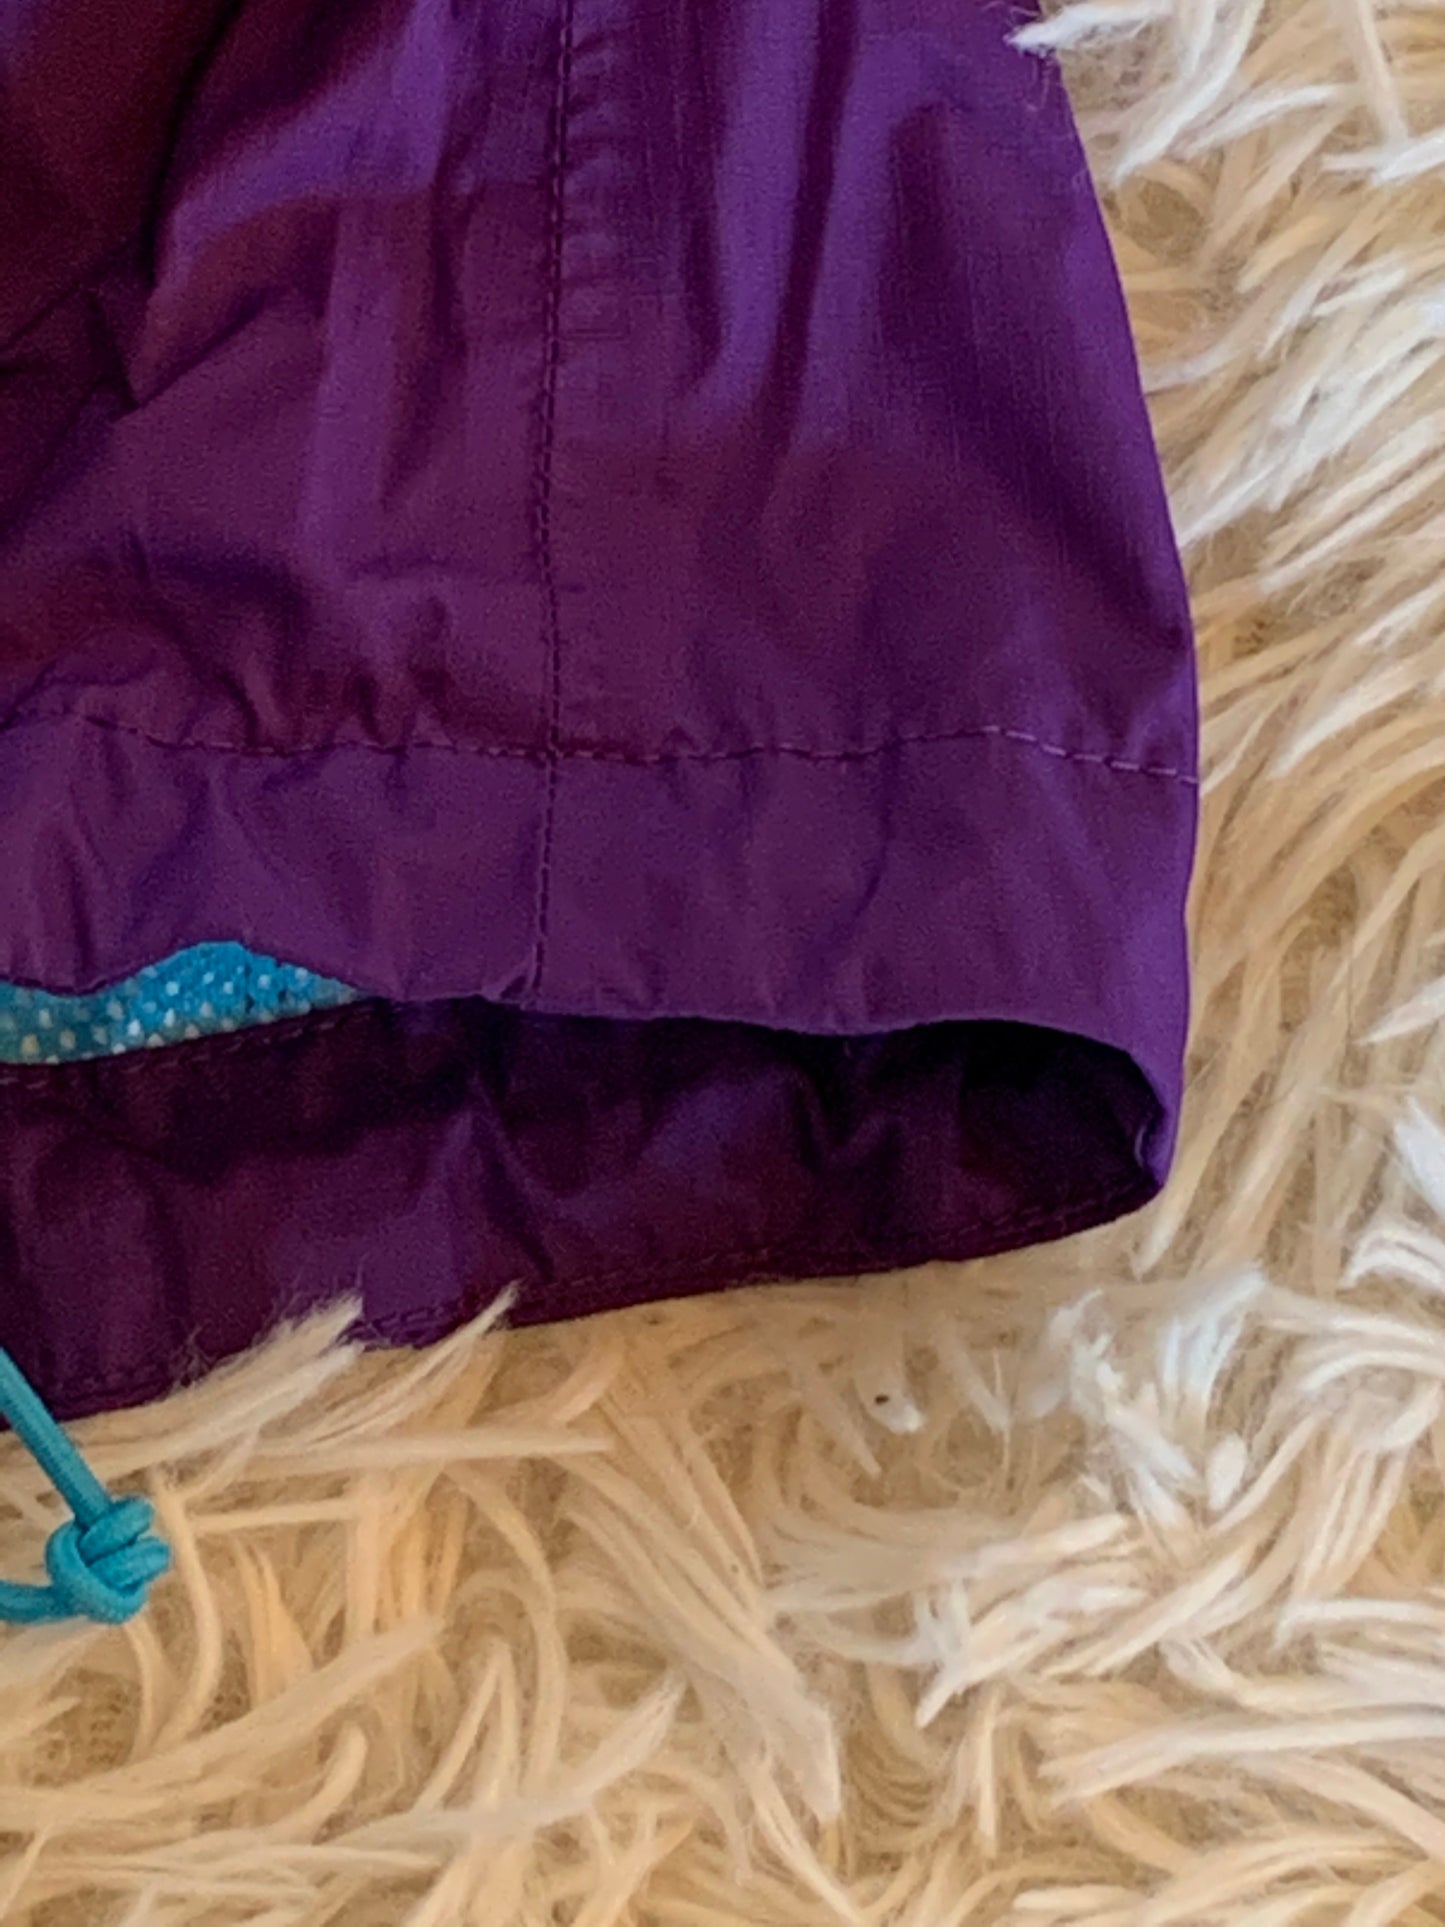 The North Face Windbreaker Women's Jacket Purple - Size XS